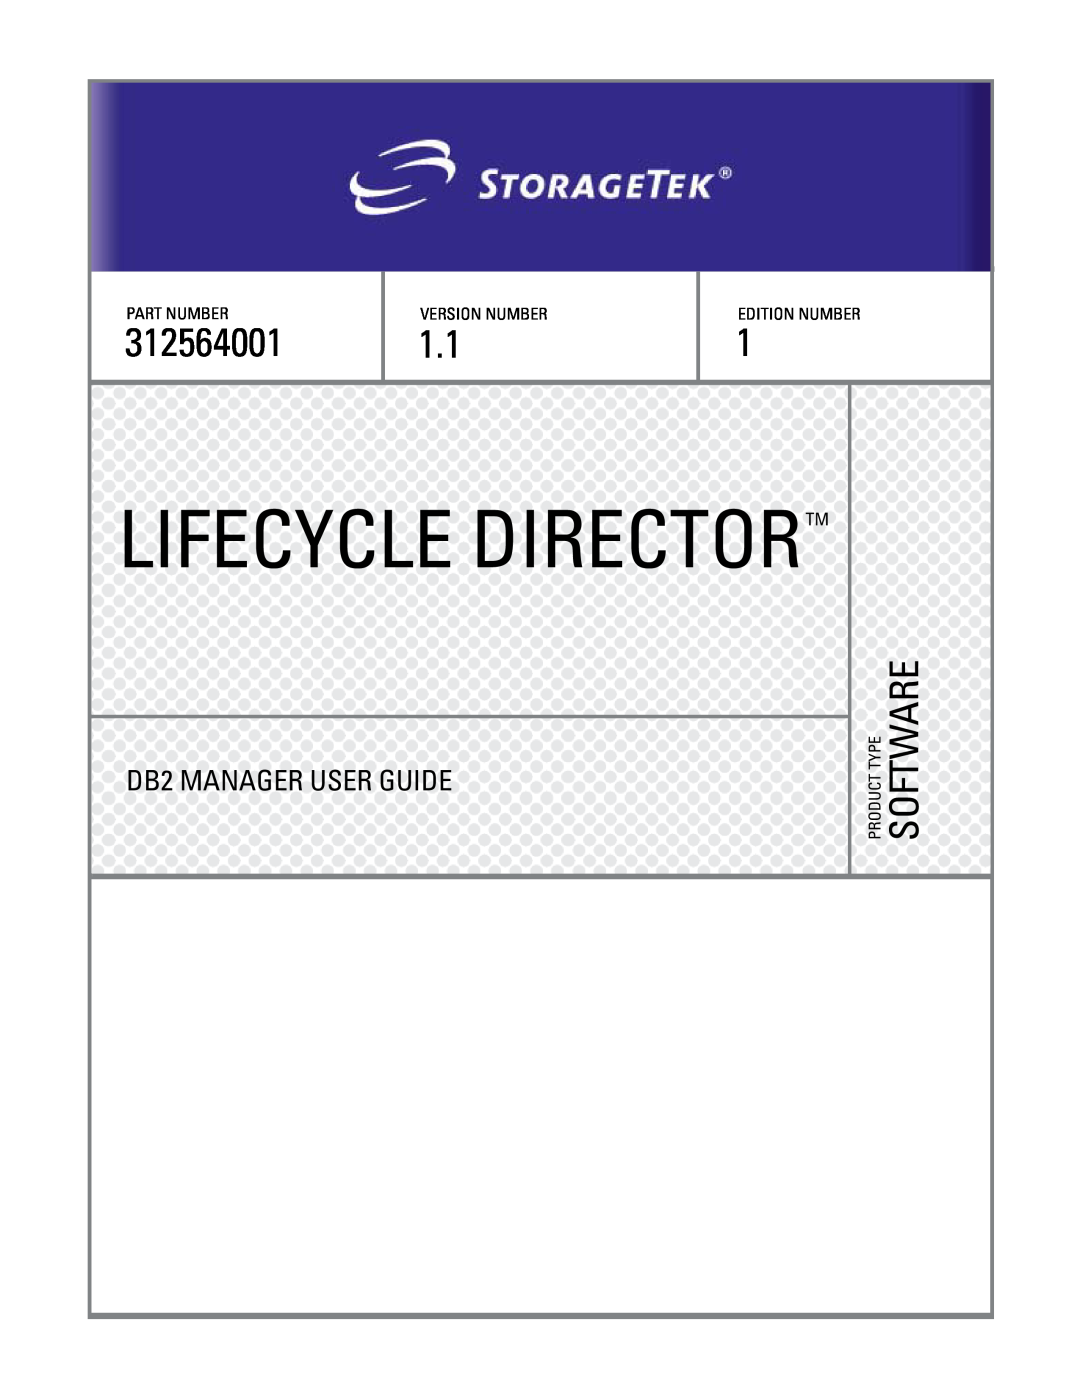 StorageTek 312564001 manual DB2 MANAGER USER GUIDE, Lifecycle Directortm, Part Number, Version Number, Edition Number 